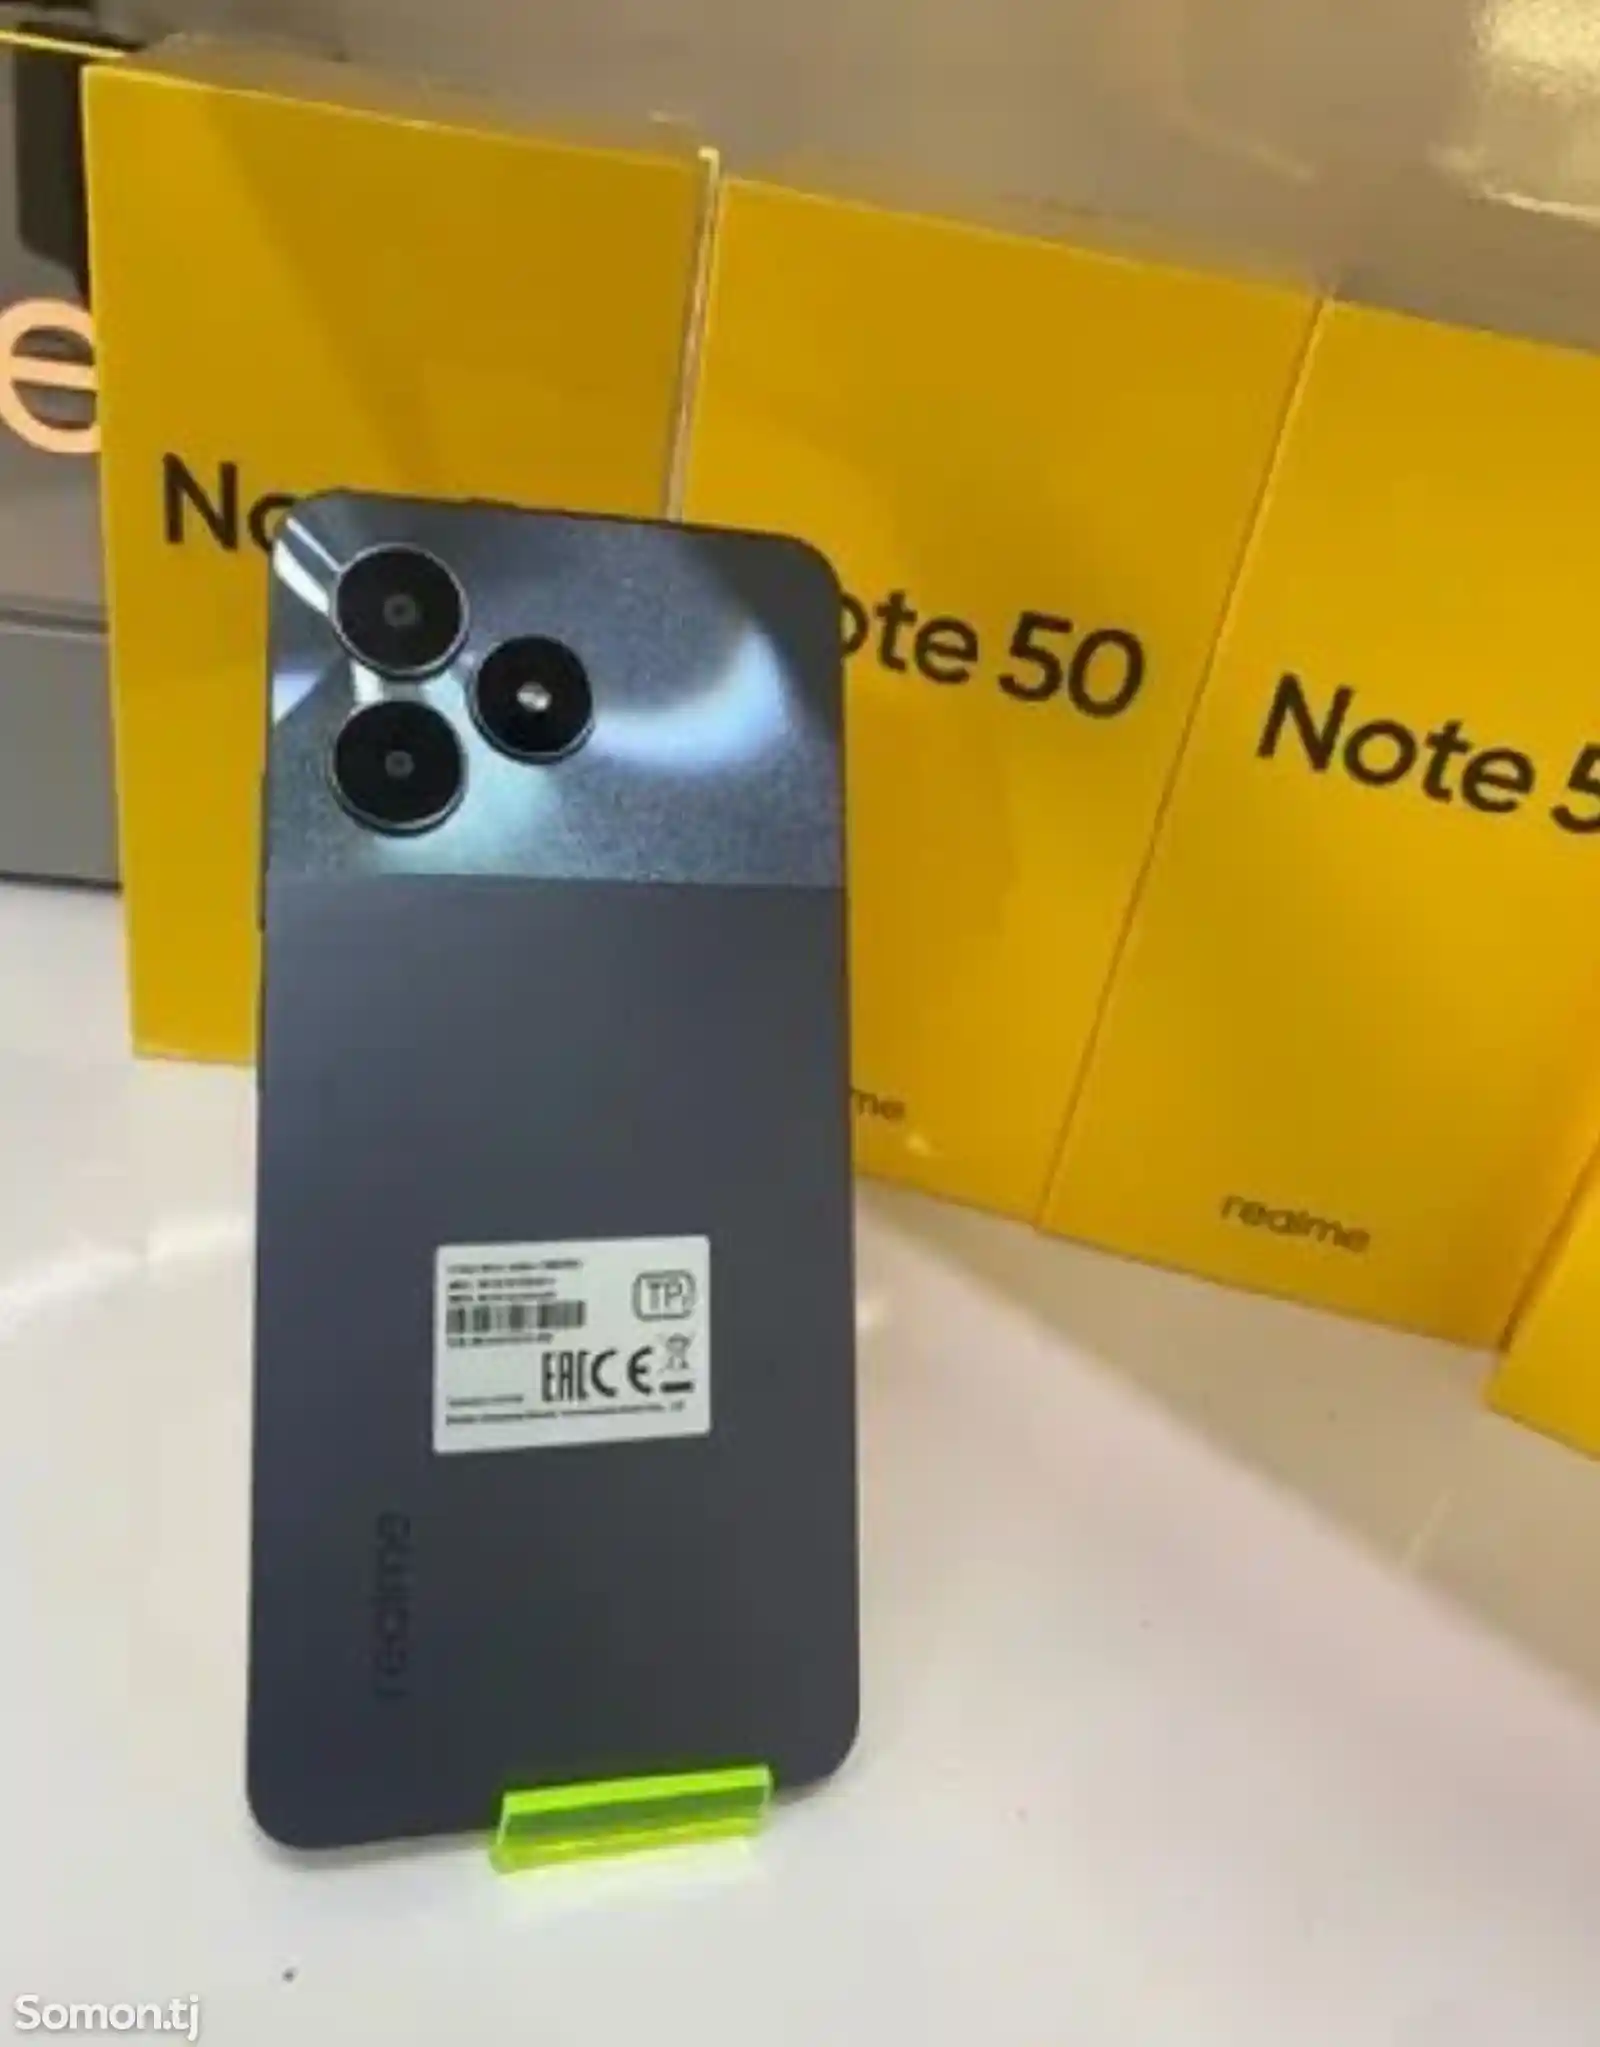 Realme Note 50 64Gb black-1